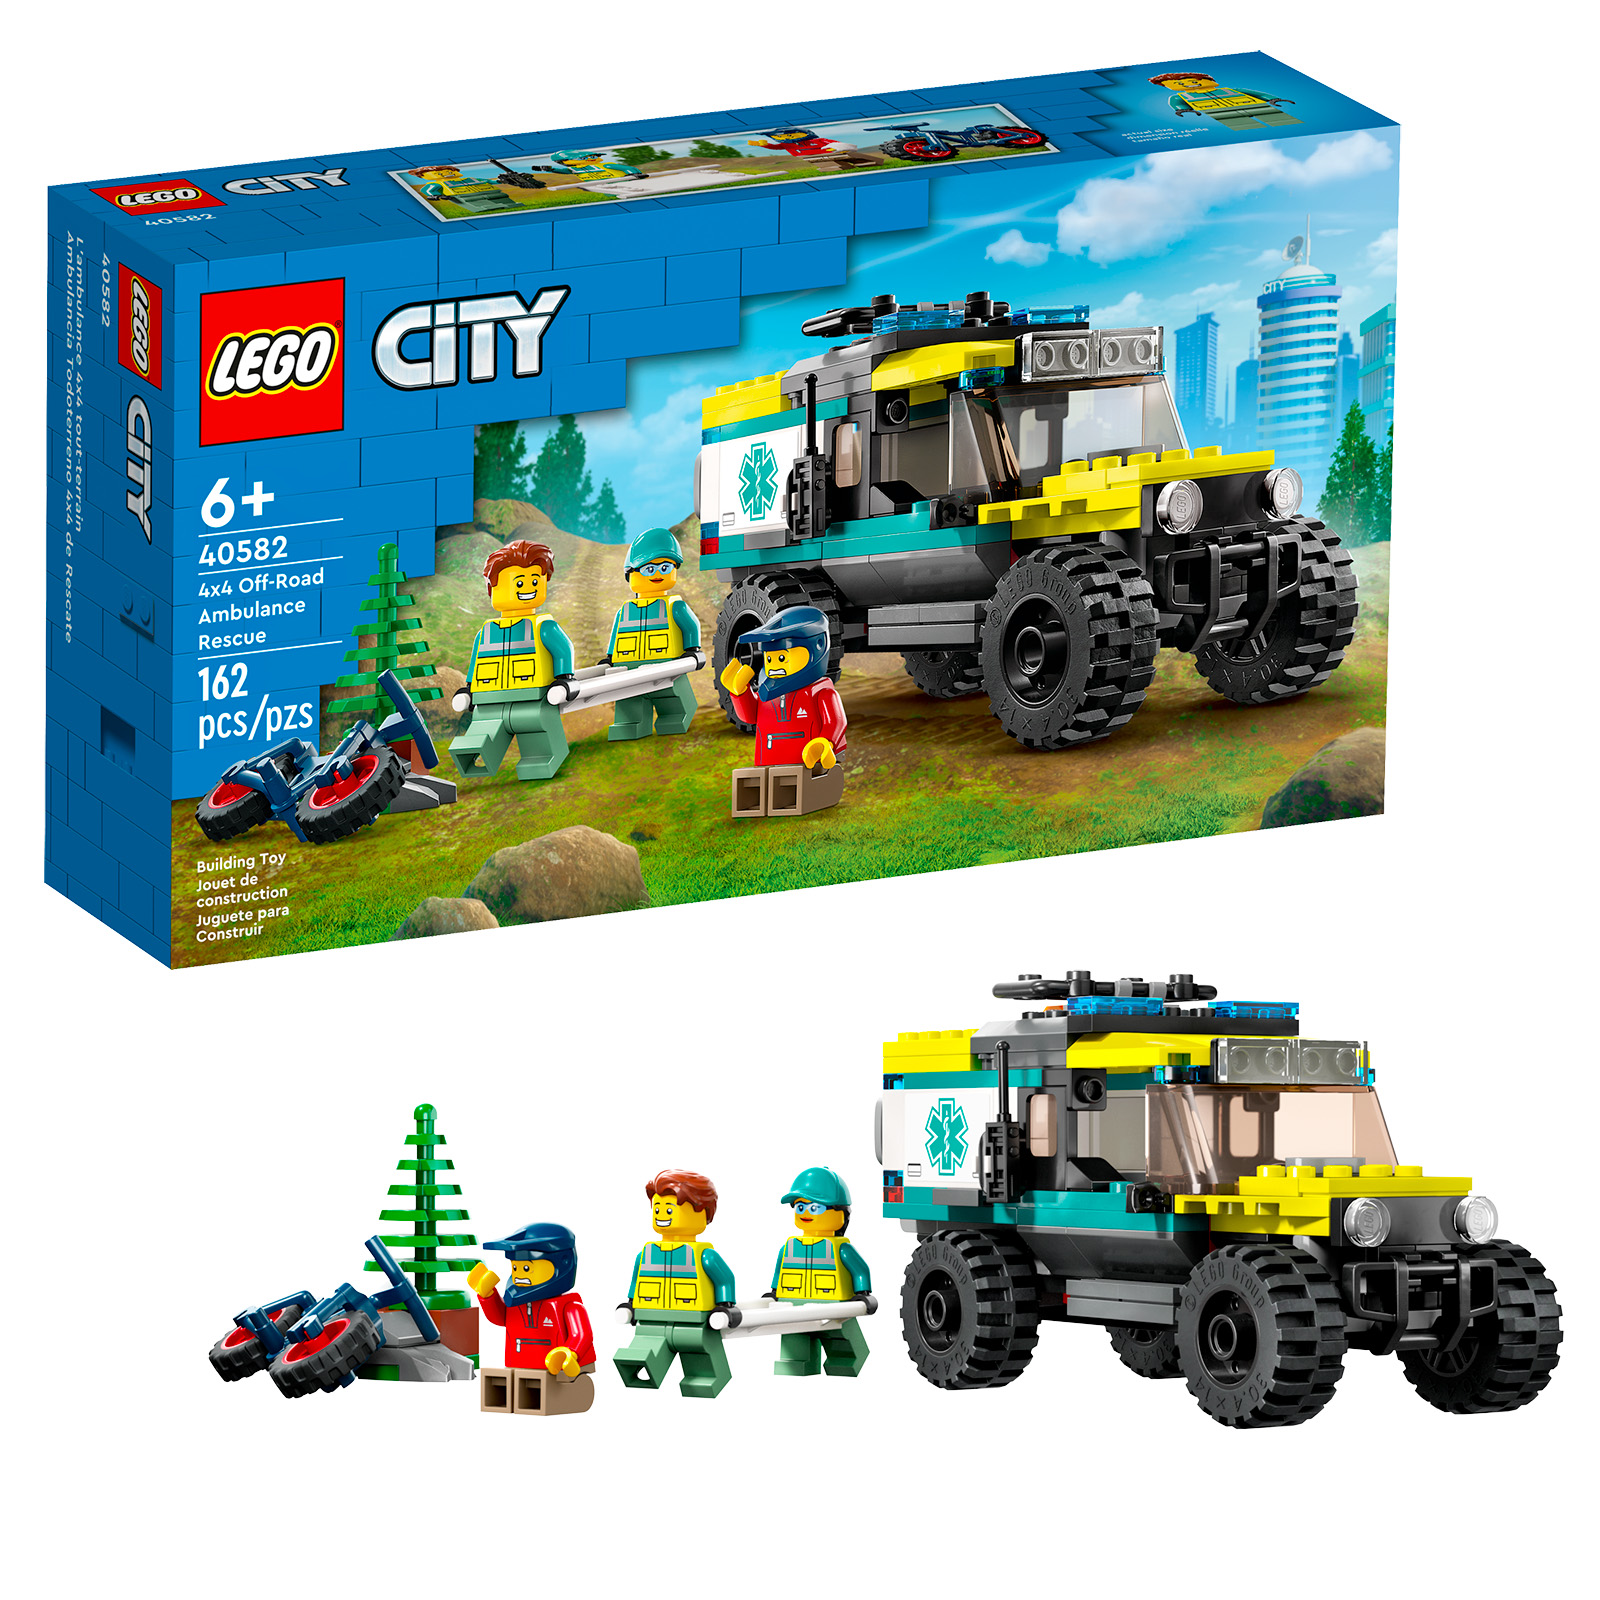 LEGO CITY 40582 4x4 Off-Road Ambulance Rescue : ce sera finalement dès 100 € d'achat et sans restriction de gamme